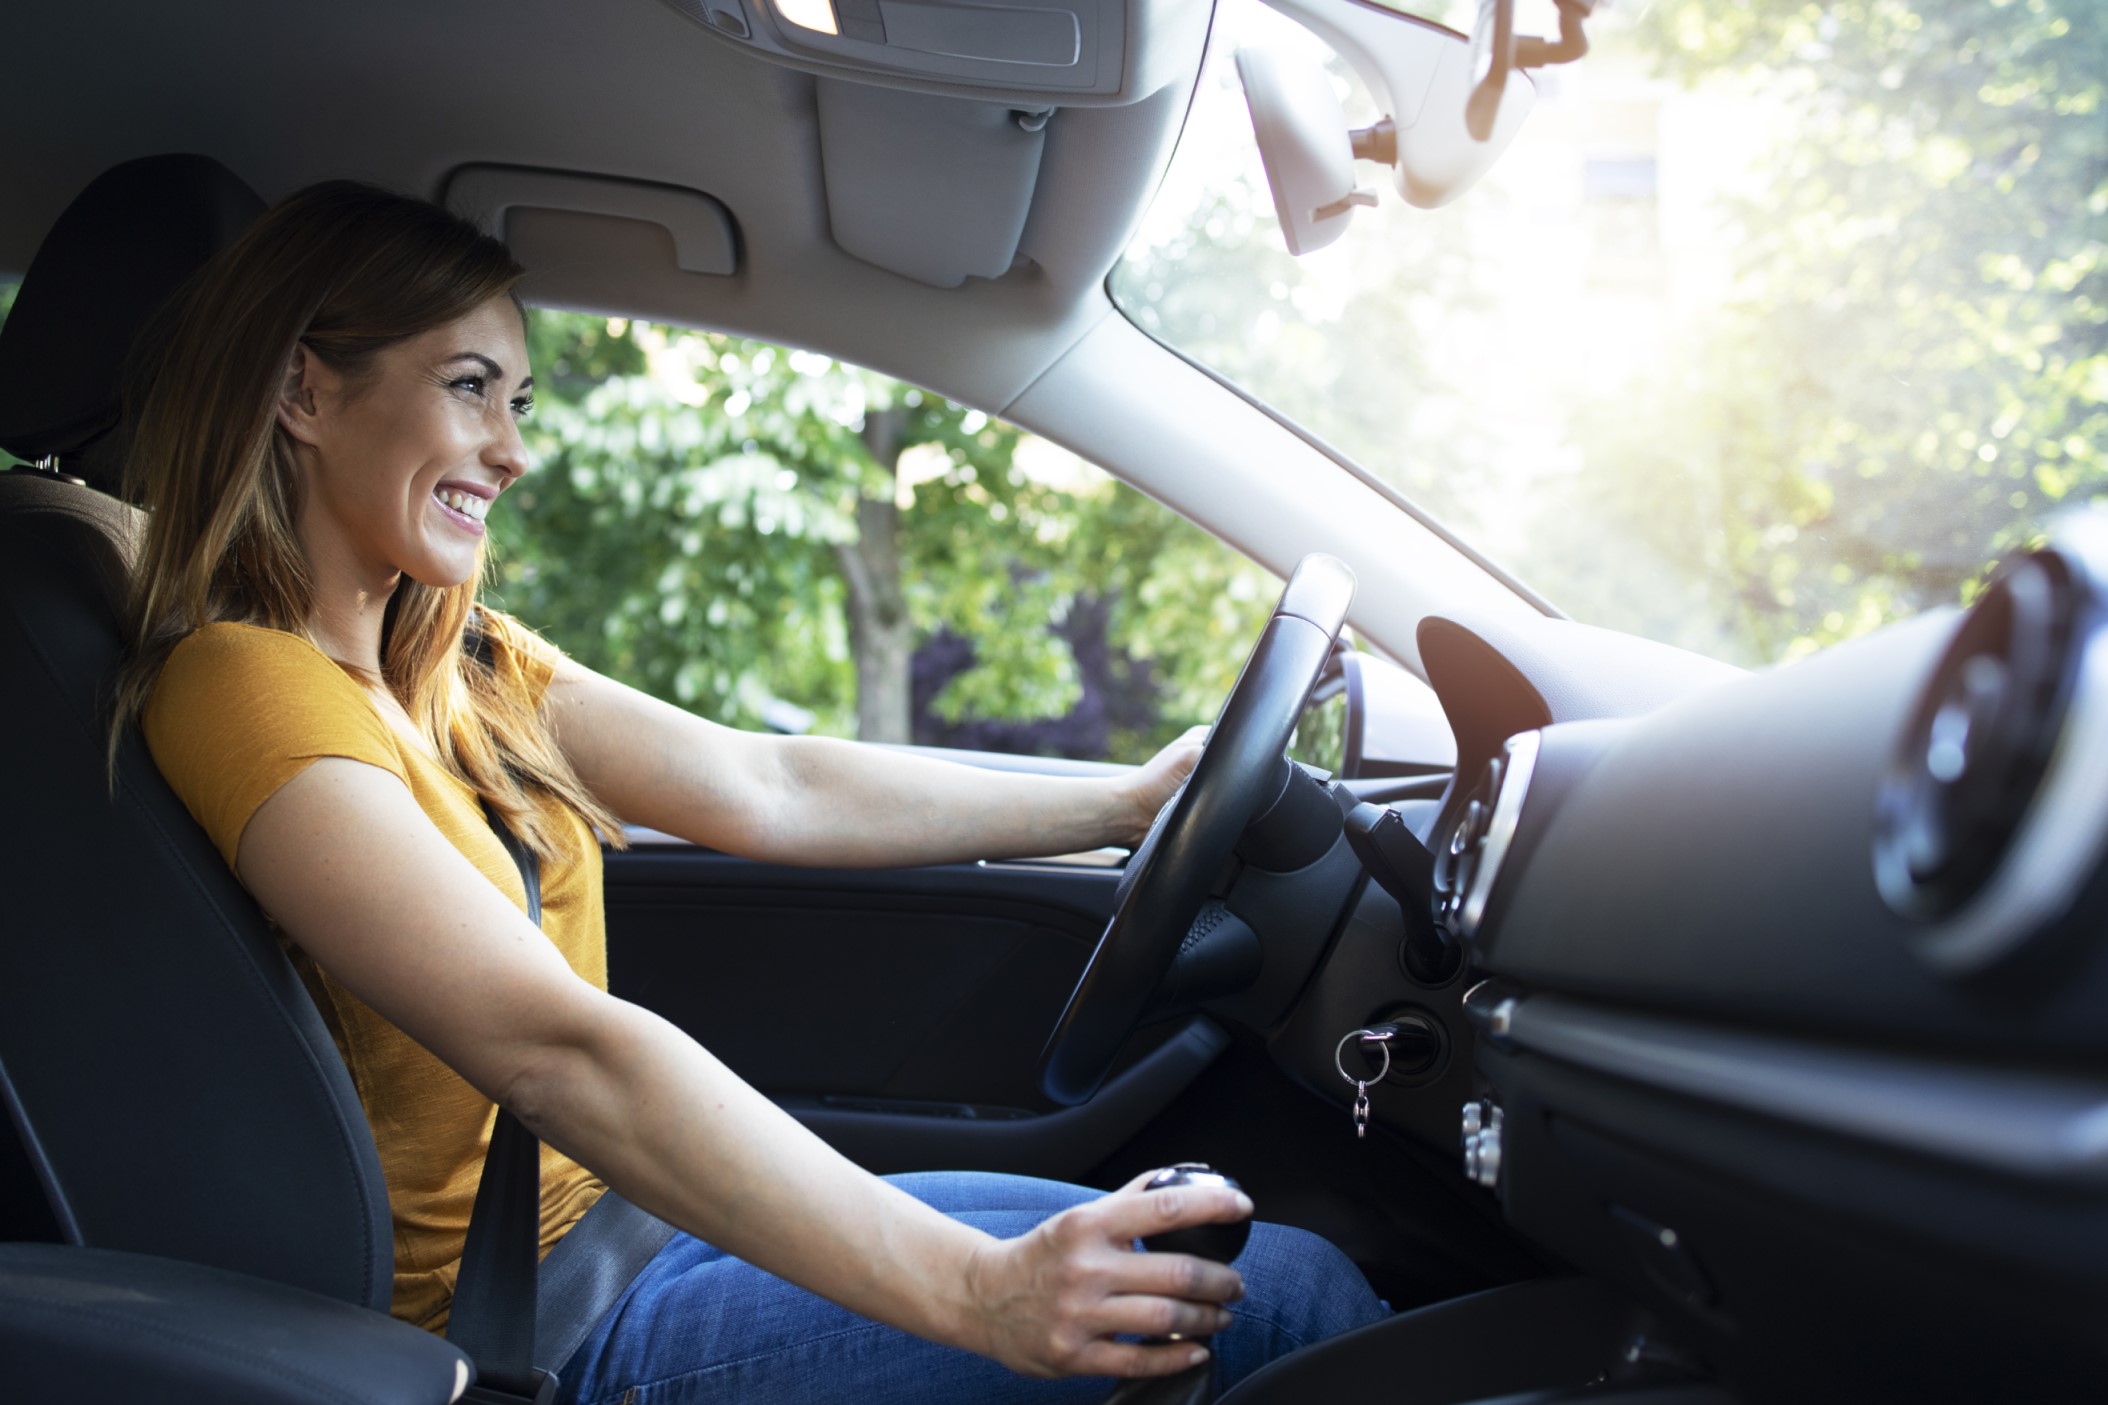 Cuatro consejos de seguridad vial para reducir accidentes e impulsar la responsabilidad al volante